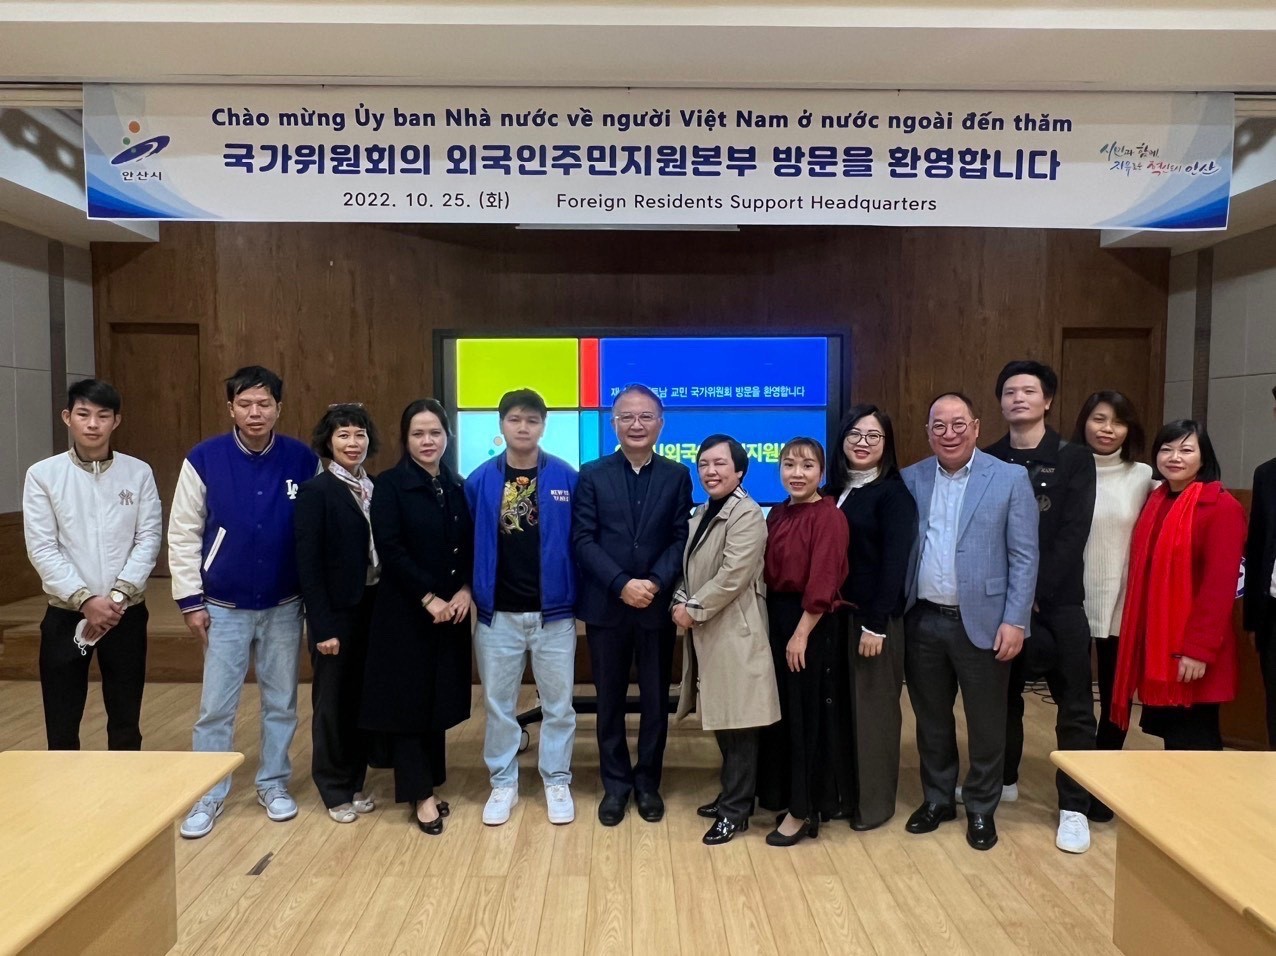 Gặp gỡ đại diện các hội đoàn cộng đồng người Việt tại Hàn Quốc